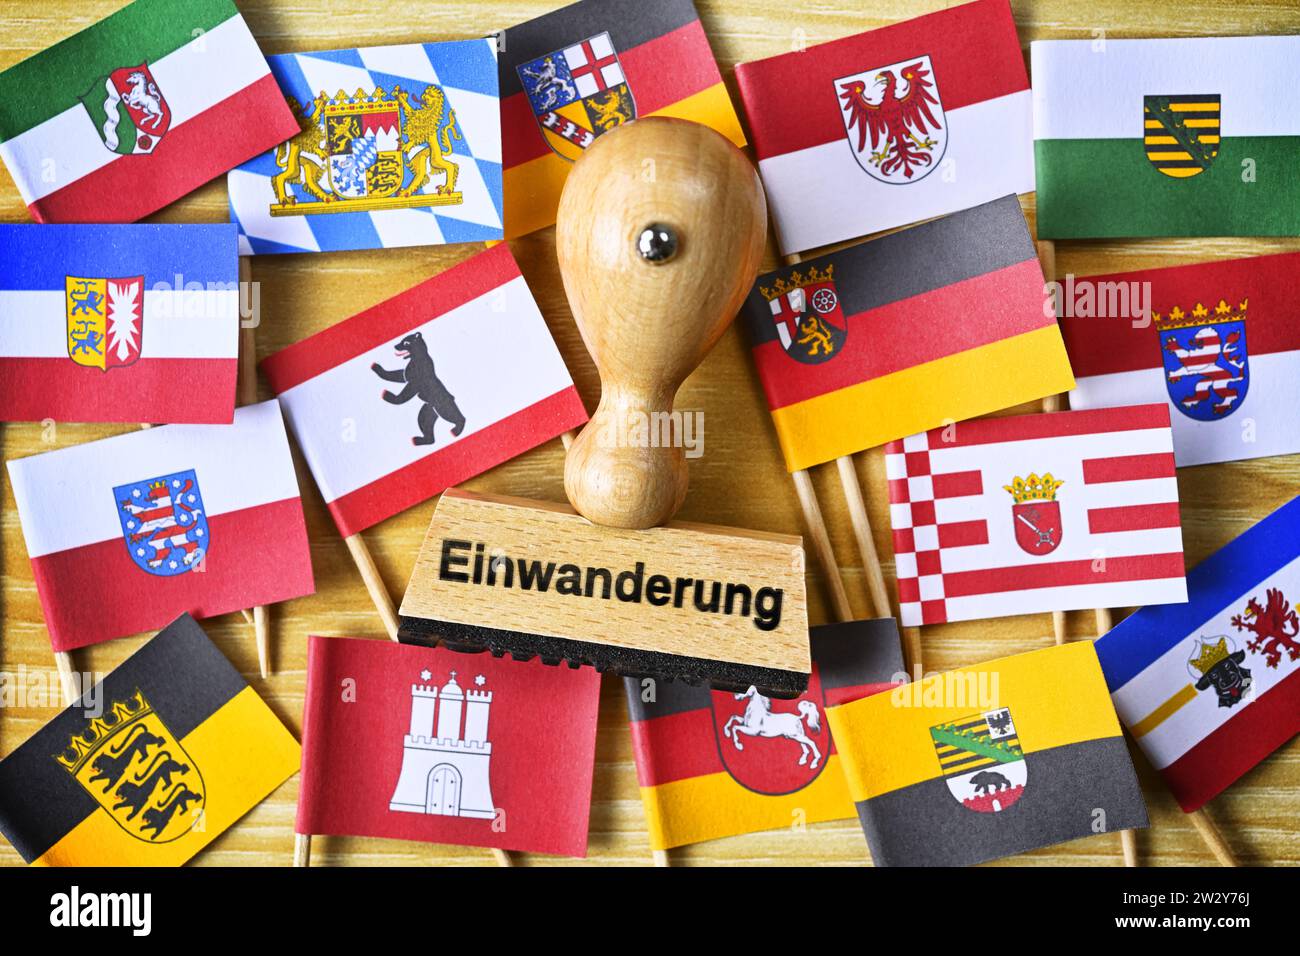 FOTOMONTAGE, Stempel mit Aufschrift Einwanderung inmitten Fahnen der deutschen Bundesländer Stock Photo